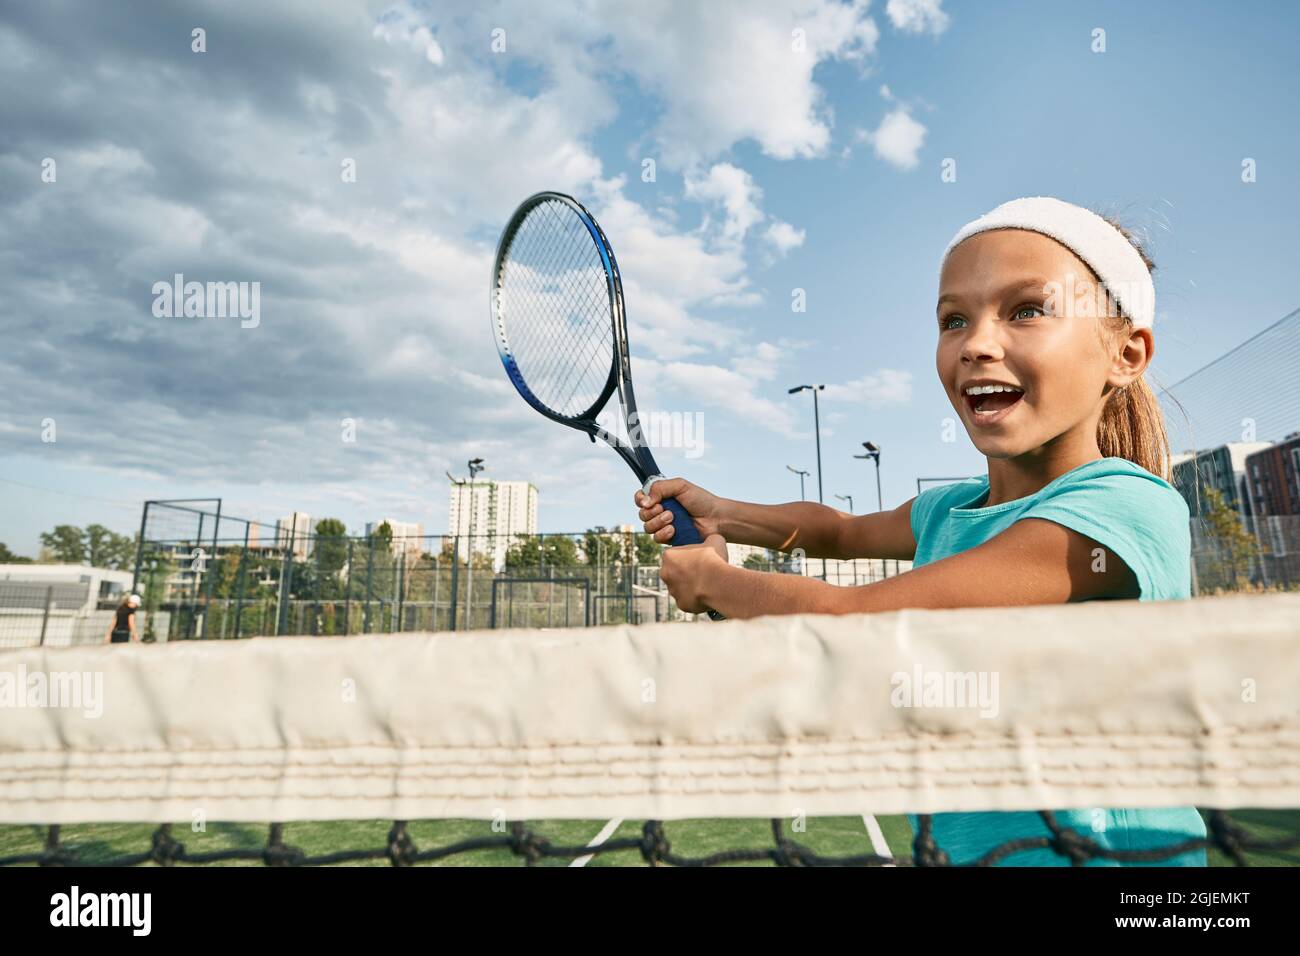 Belle femme enfant joueur de tennis jouant à l'avant près du filet pendant un match de tennis sur le court de ville à l'extérieur, vue à angle bas Banque D'Images